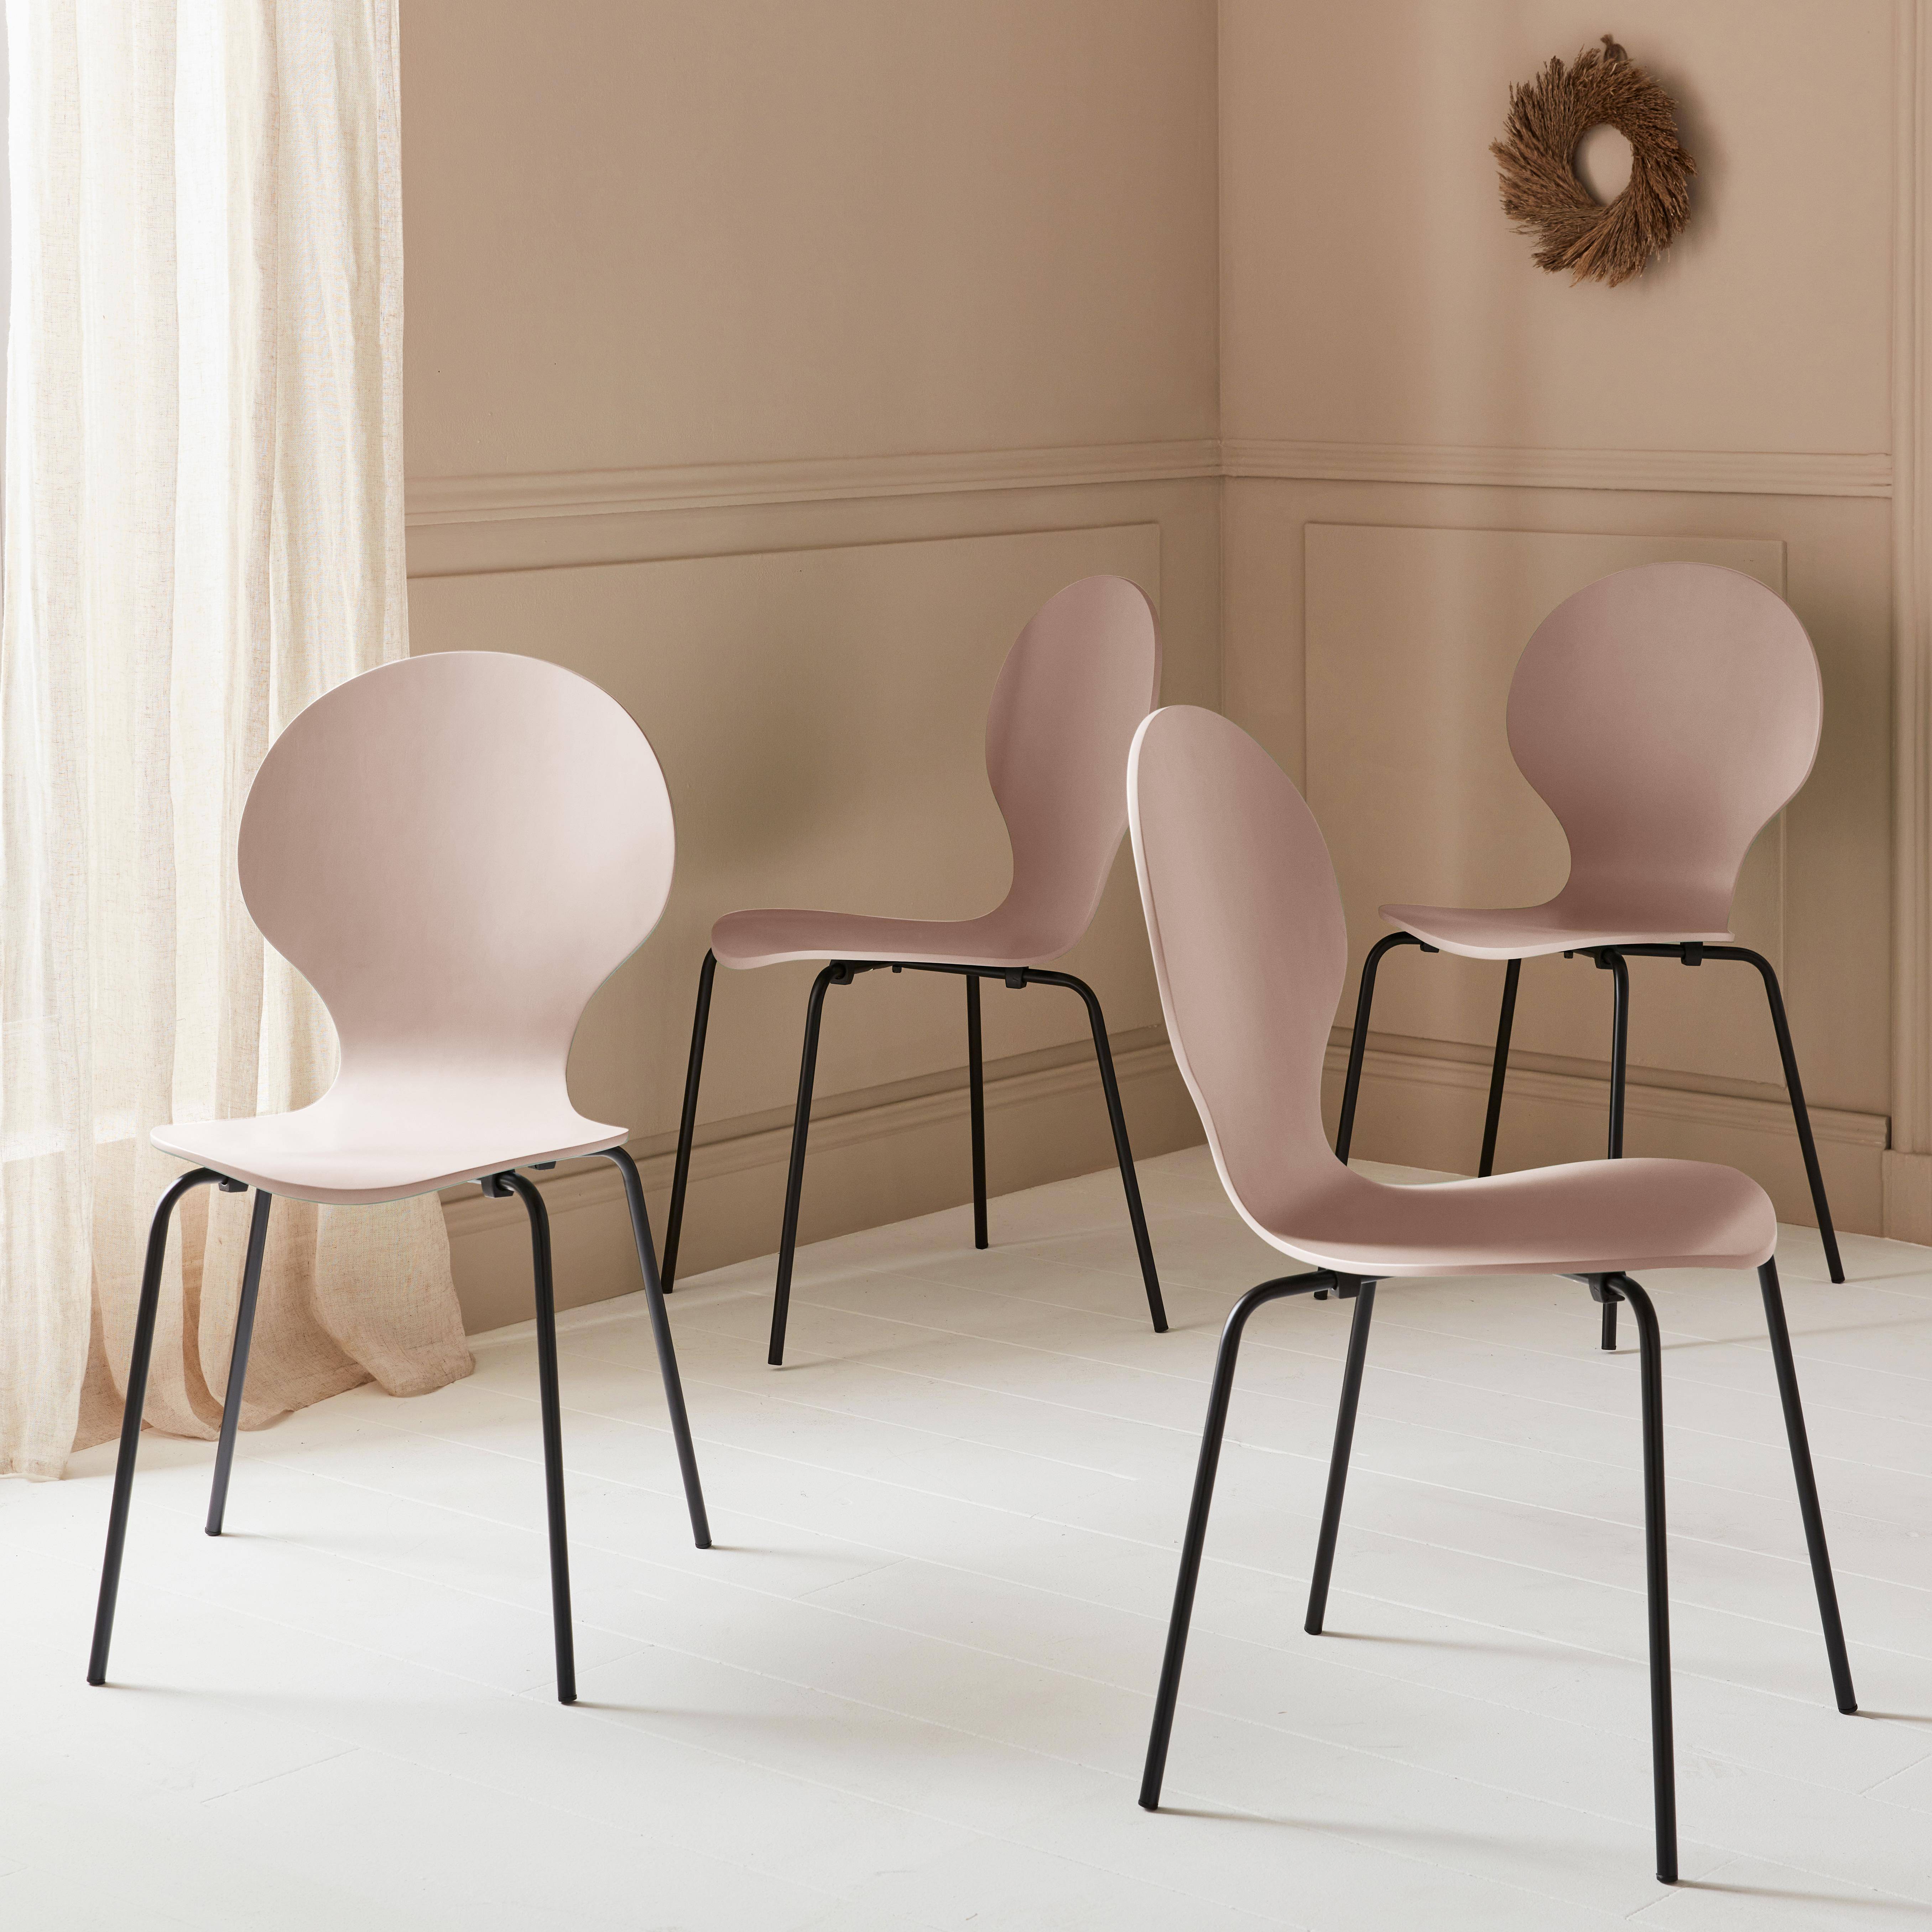 Lot de 4 chaises roses, rétro empilables, bois d'hévéa et contreplaqué, pieds en acier, Naomi, L 43 x P 48 x H 87cm,sweeek,Photo1